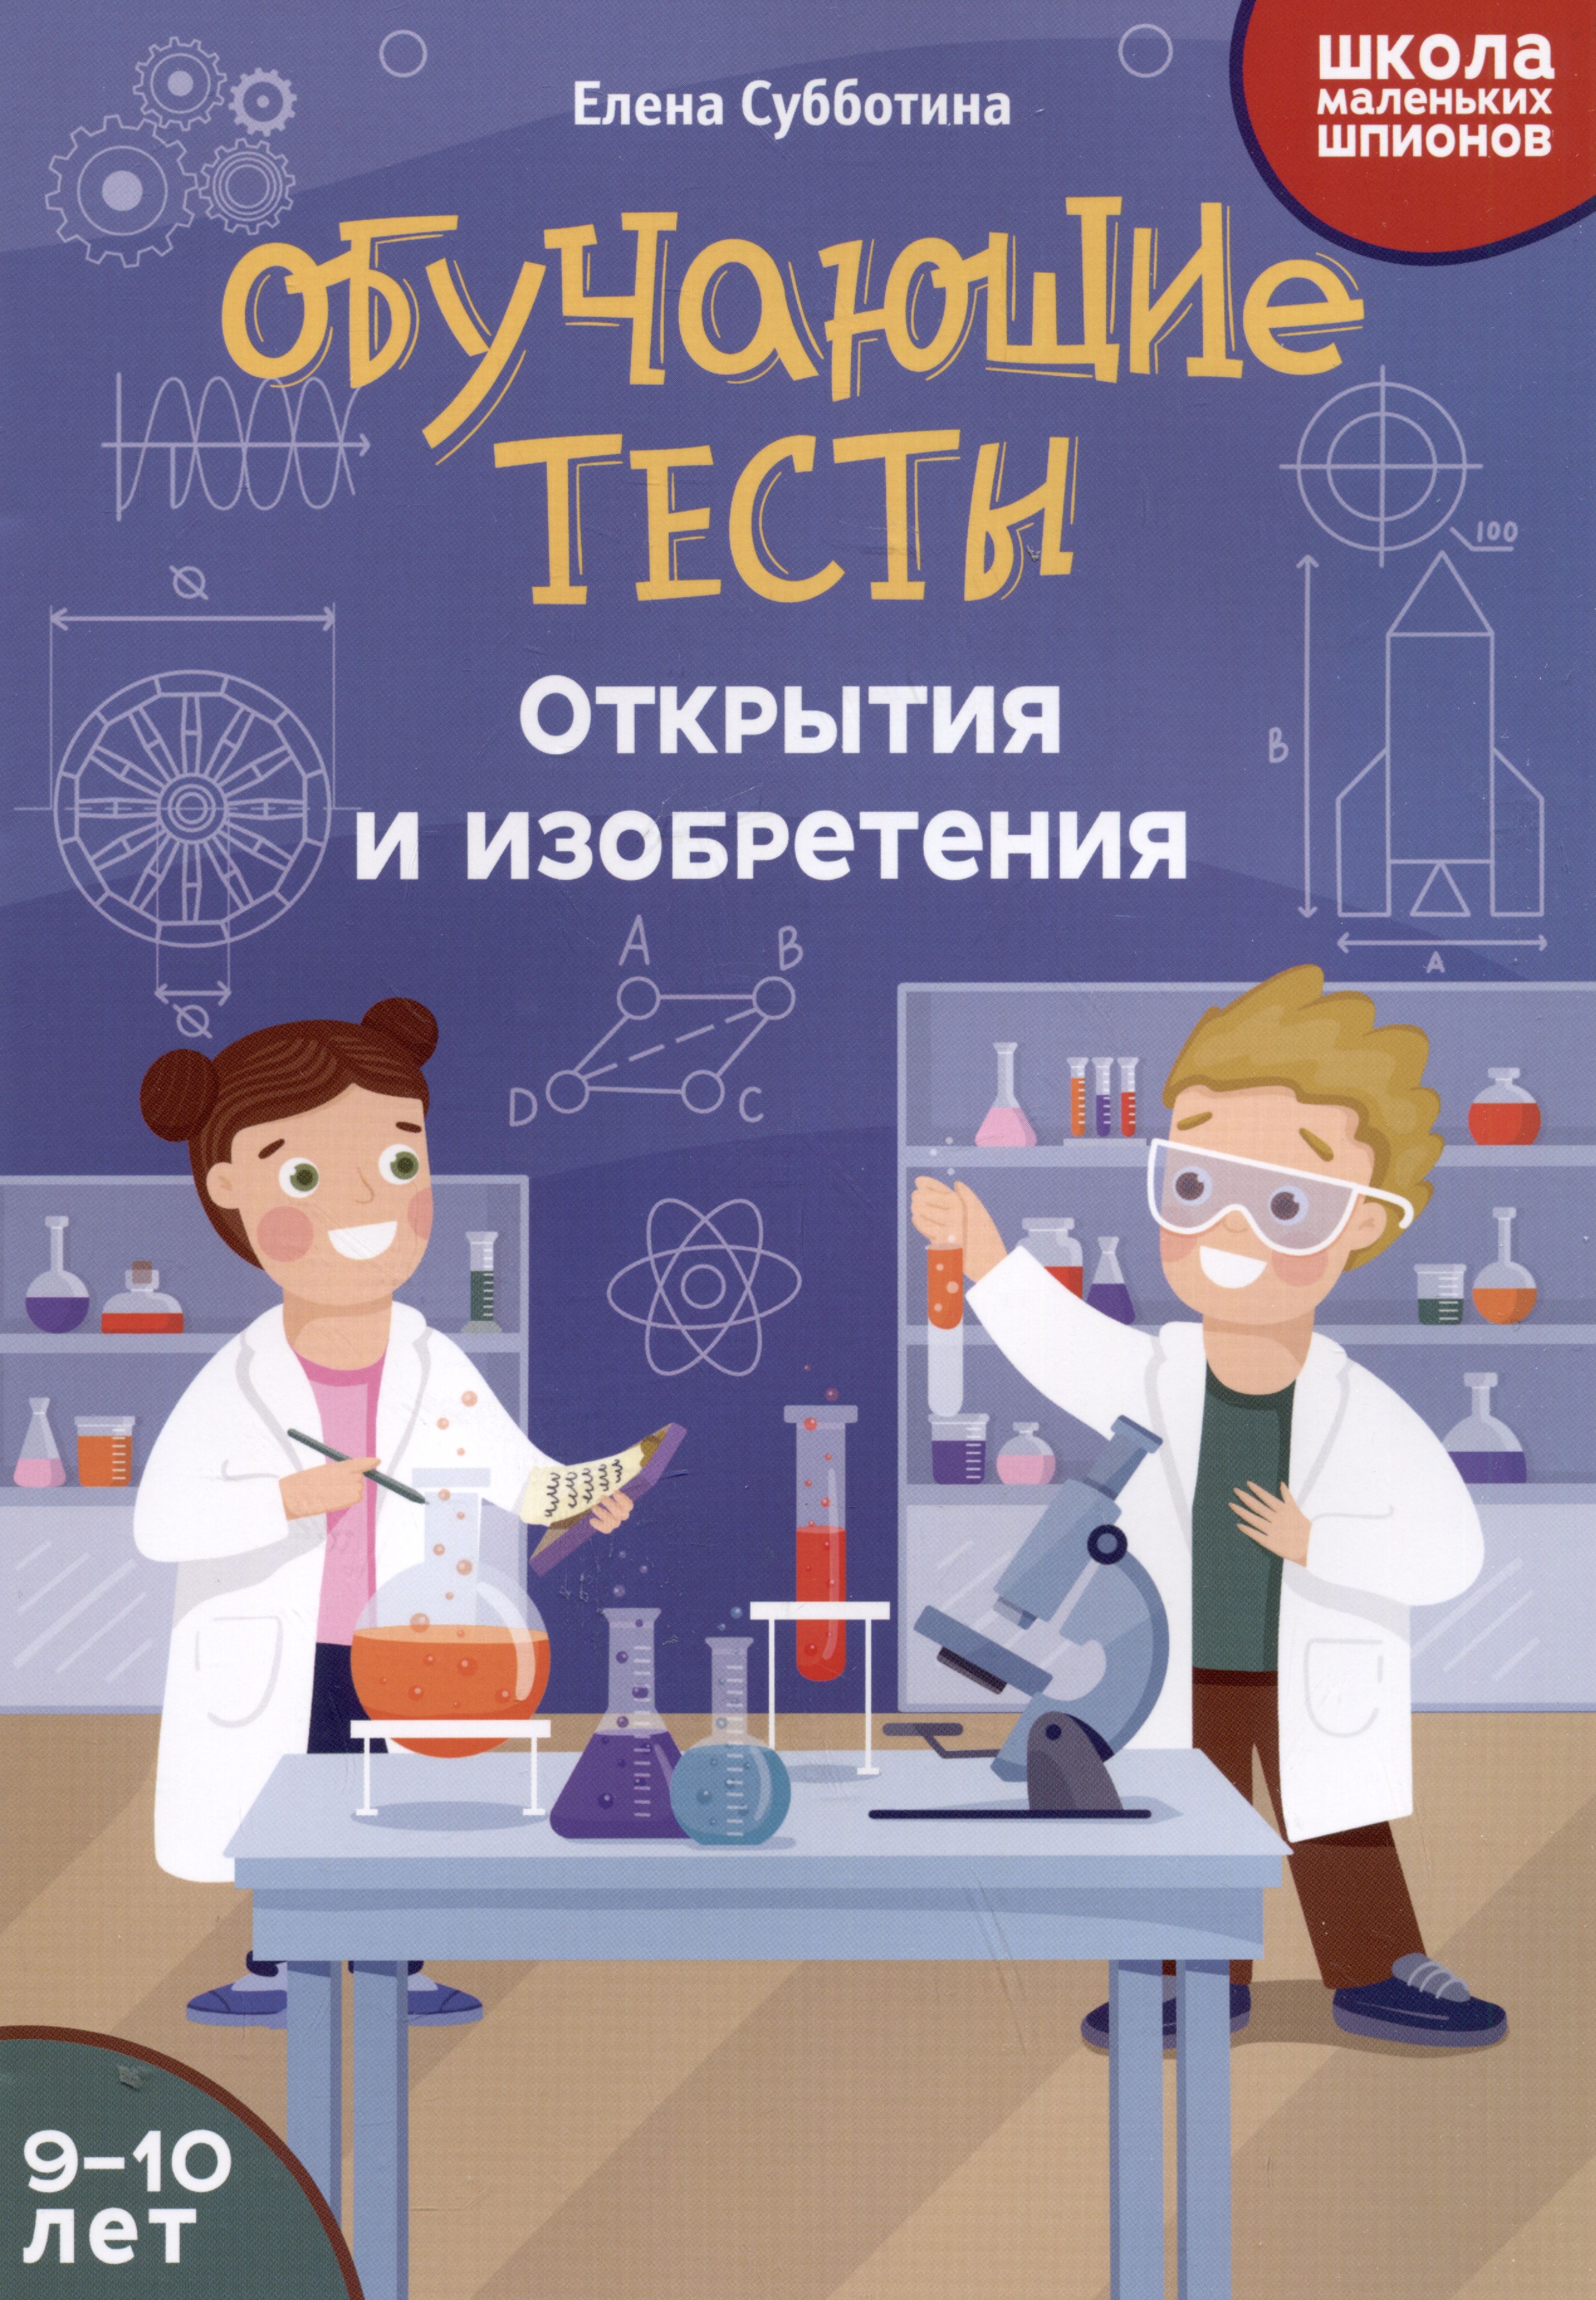 Обучающие тесты: открытия и изобретения: 9-10 лет обучающие книги махаон книга открытия и изобретения это интересно